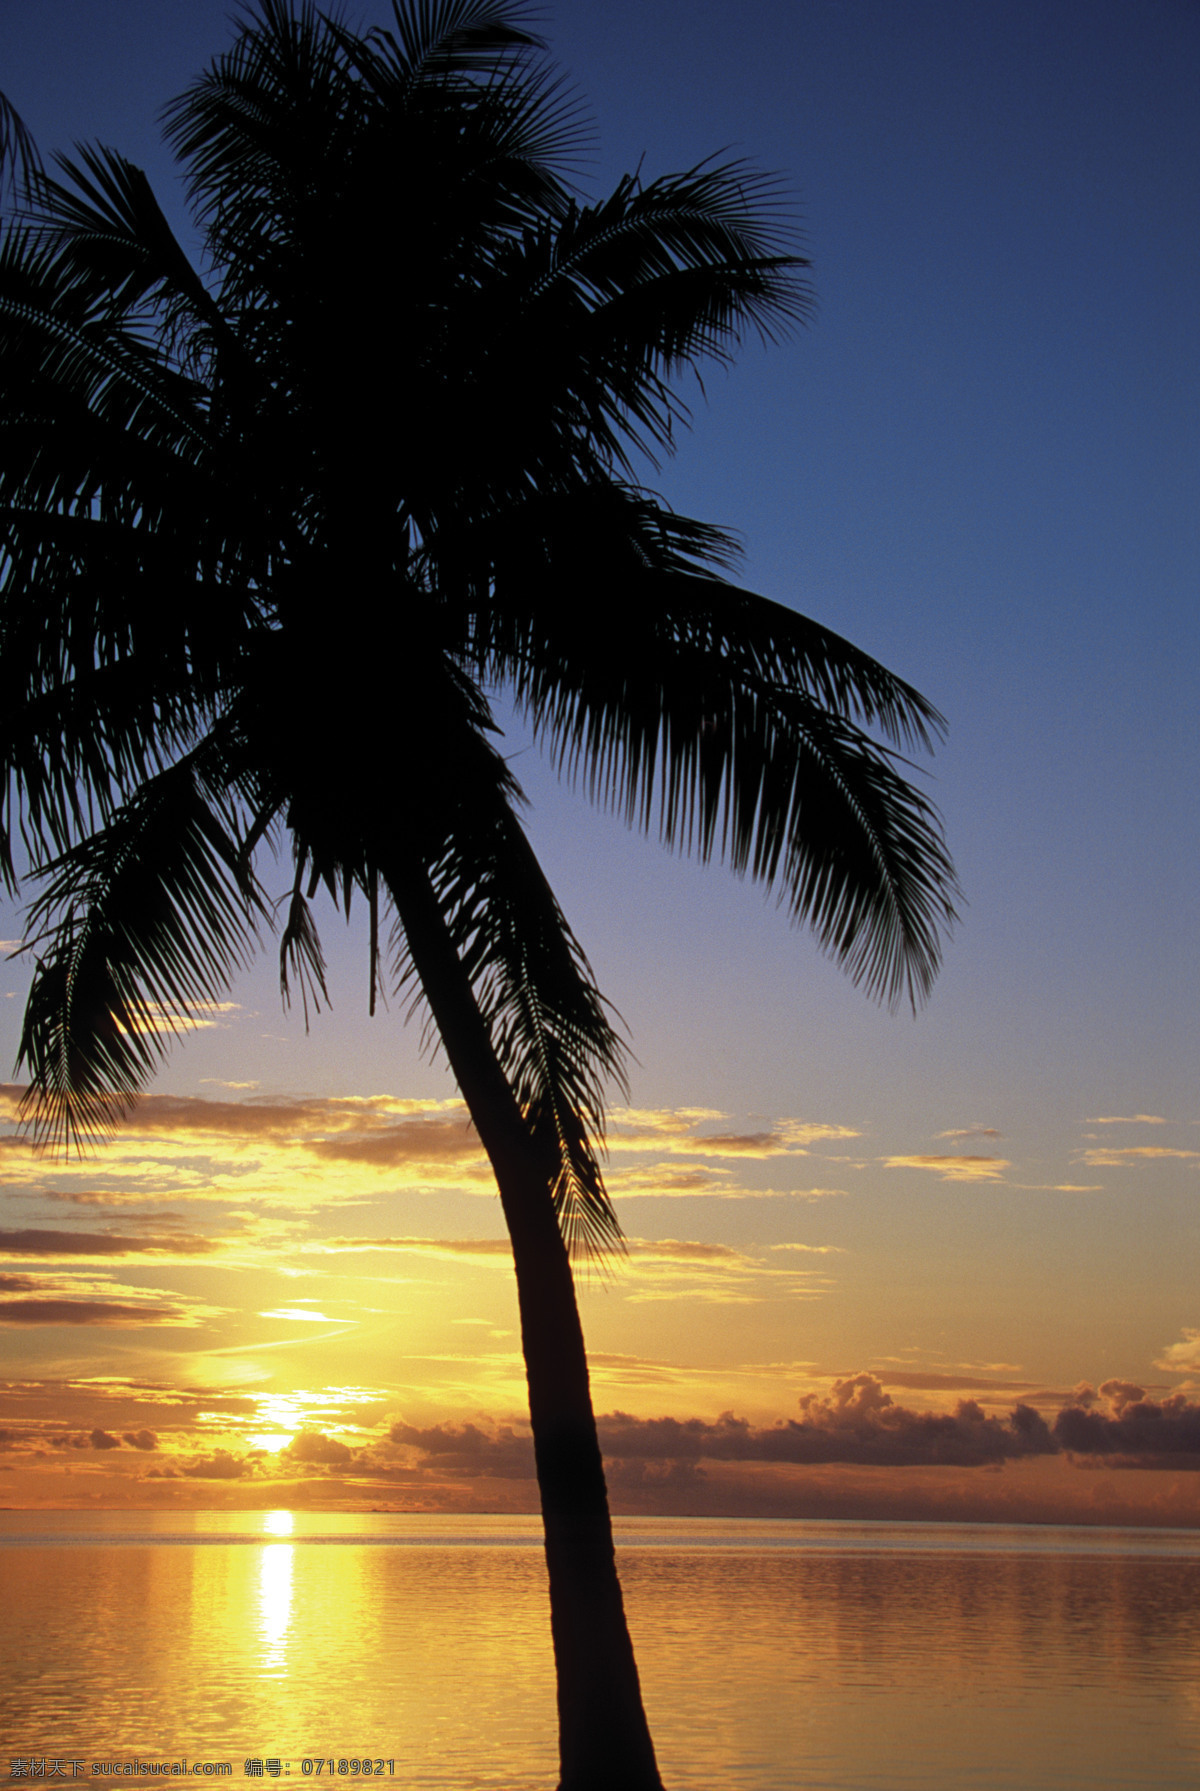 黄昏 时 海面 风光 美丽海滩 海边风景 太平洋 海岸风光 夕阳 沙滩 海滩 大海 海洋 海平面 椰子 椰树 旅游景点 海景 景色 美景 风景 摄影图 高清图片 大海图片 风景图片